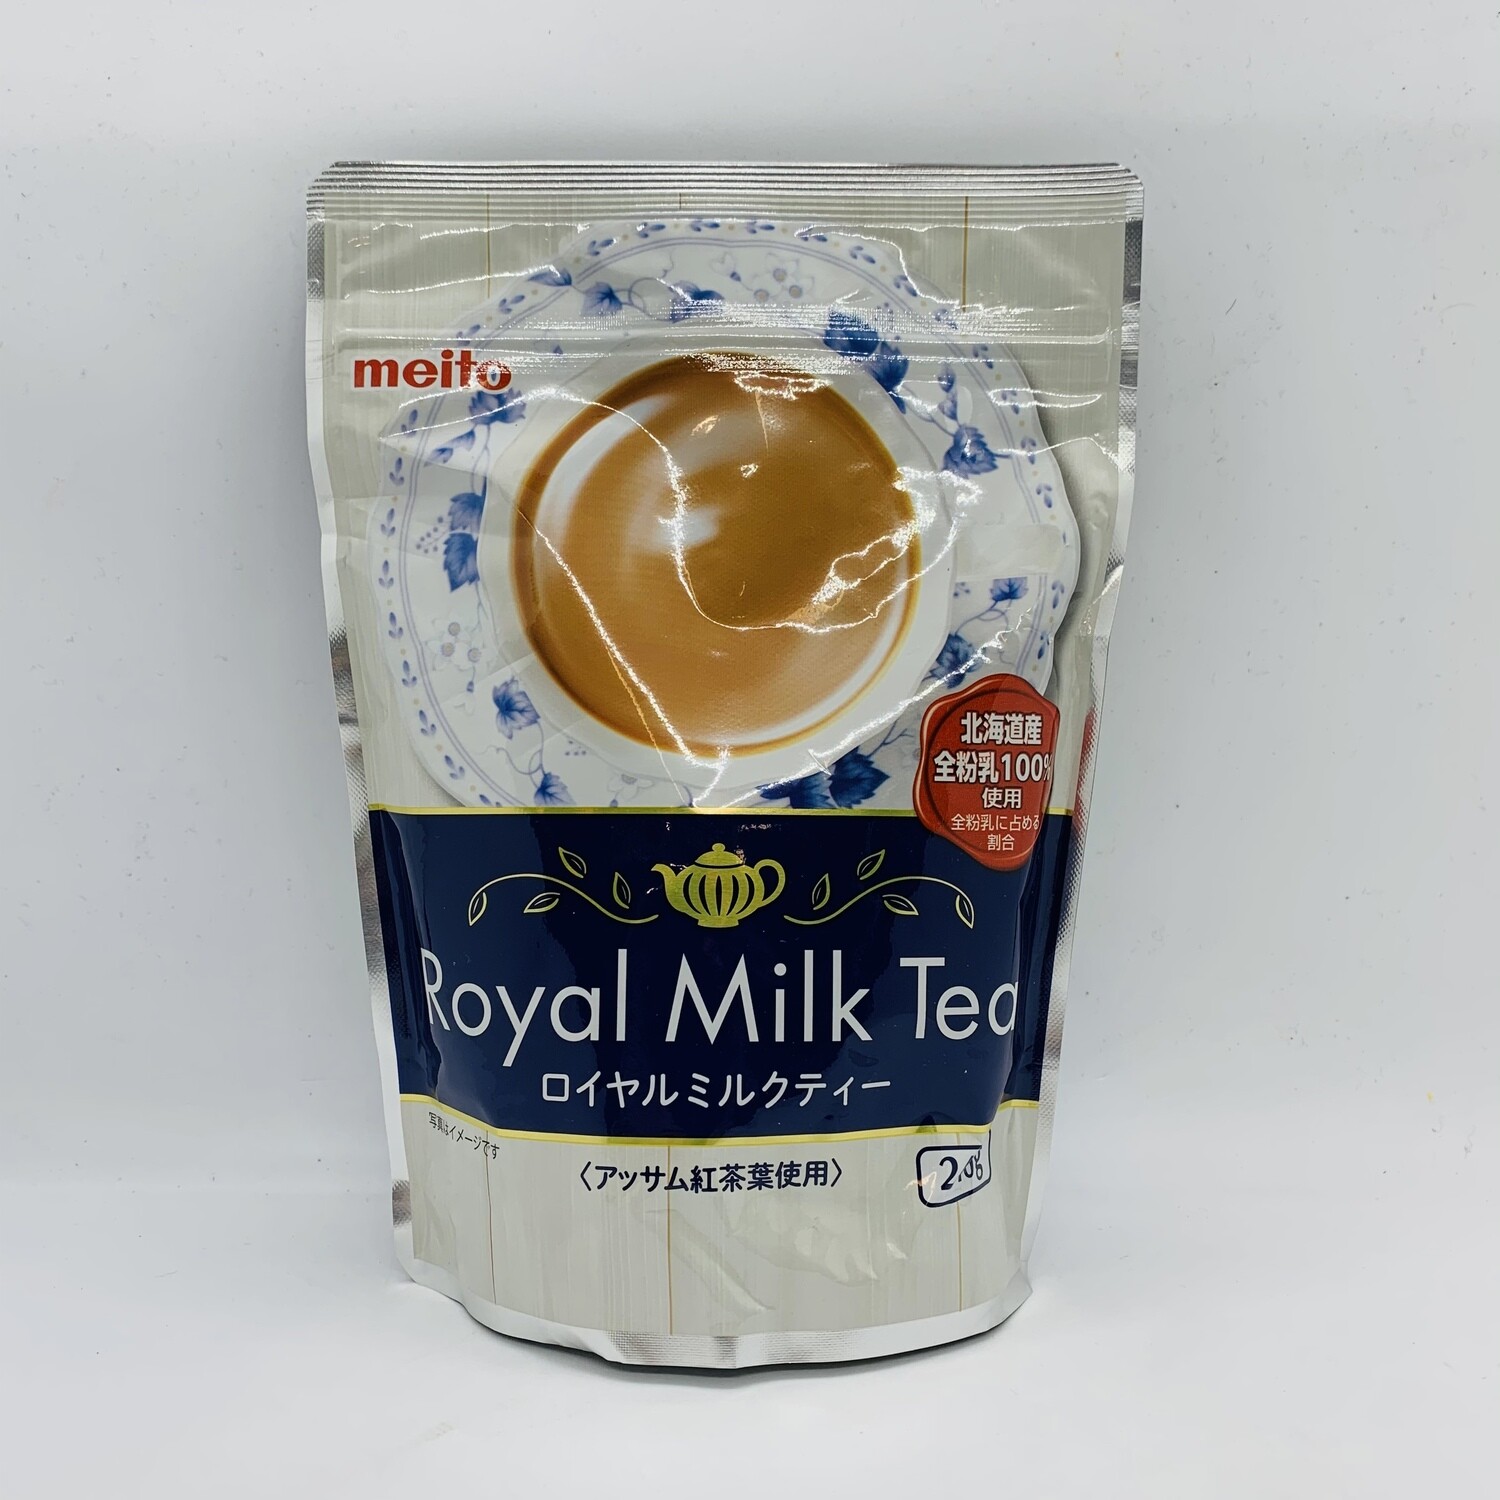 Meito Royal Milk Tea 240g